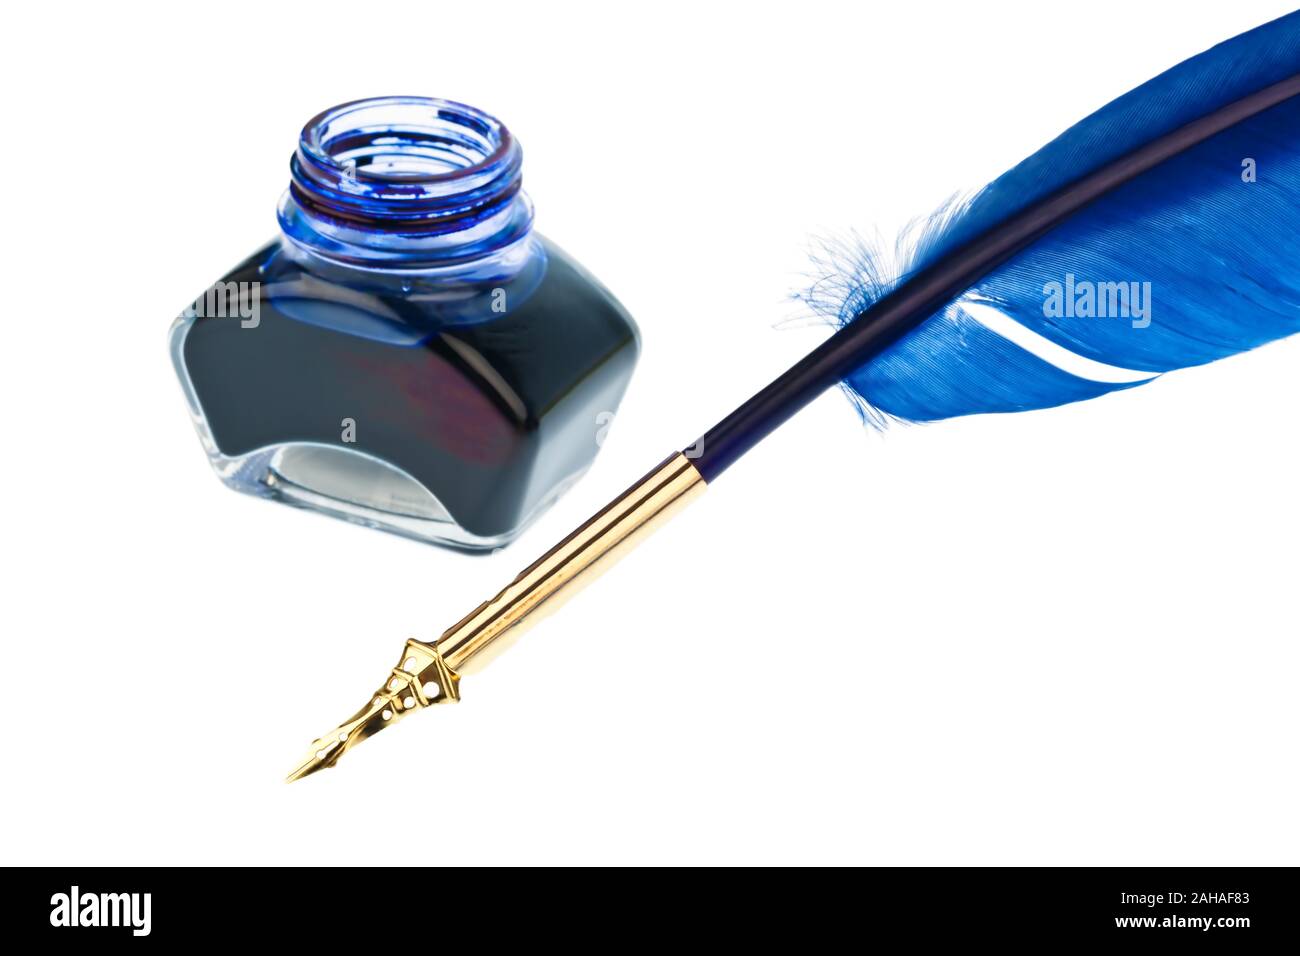 Eine blaue Schreibfeder mit einem Tintenfass auf weissem Hintergrund Stock Photo